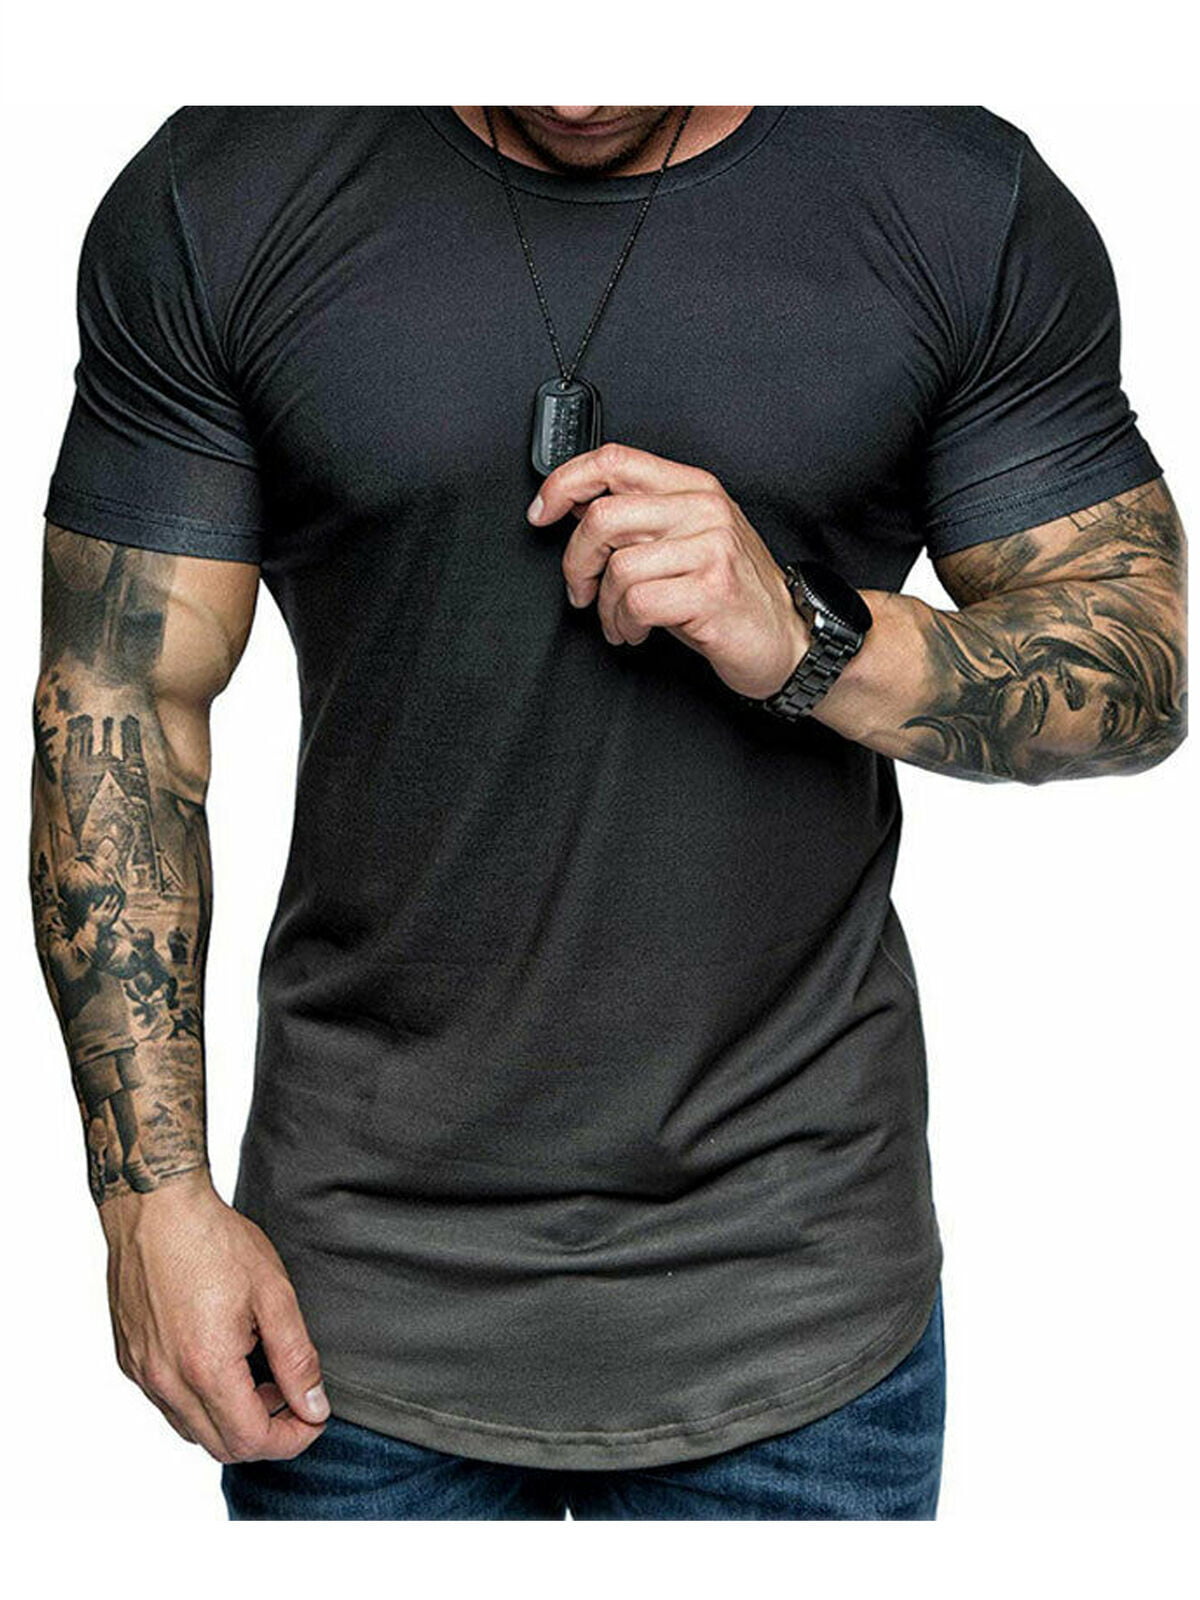 muscle fit shirts uk